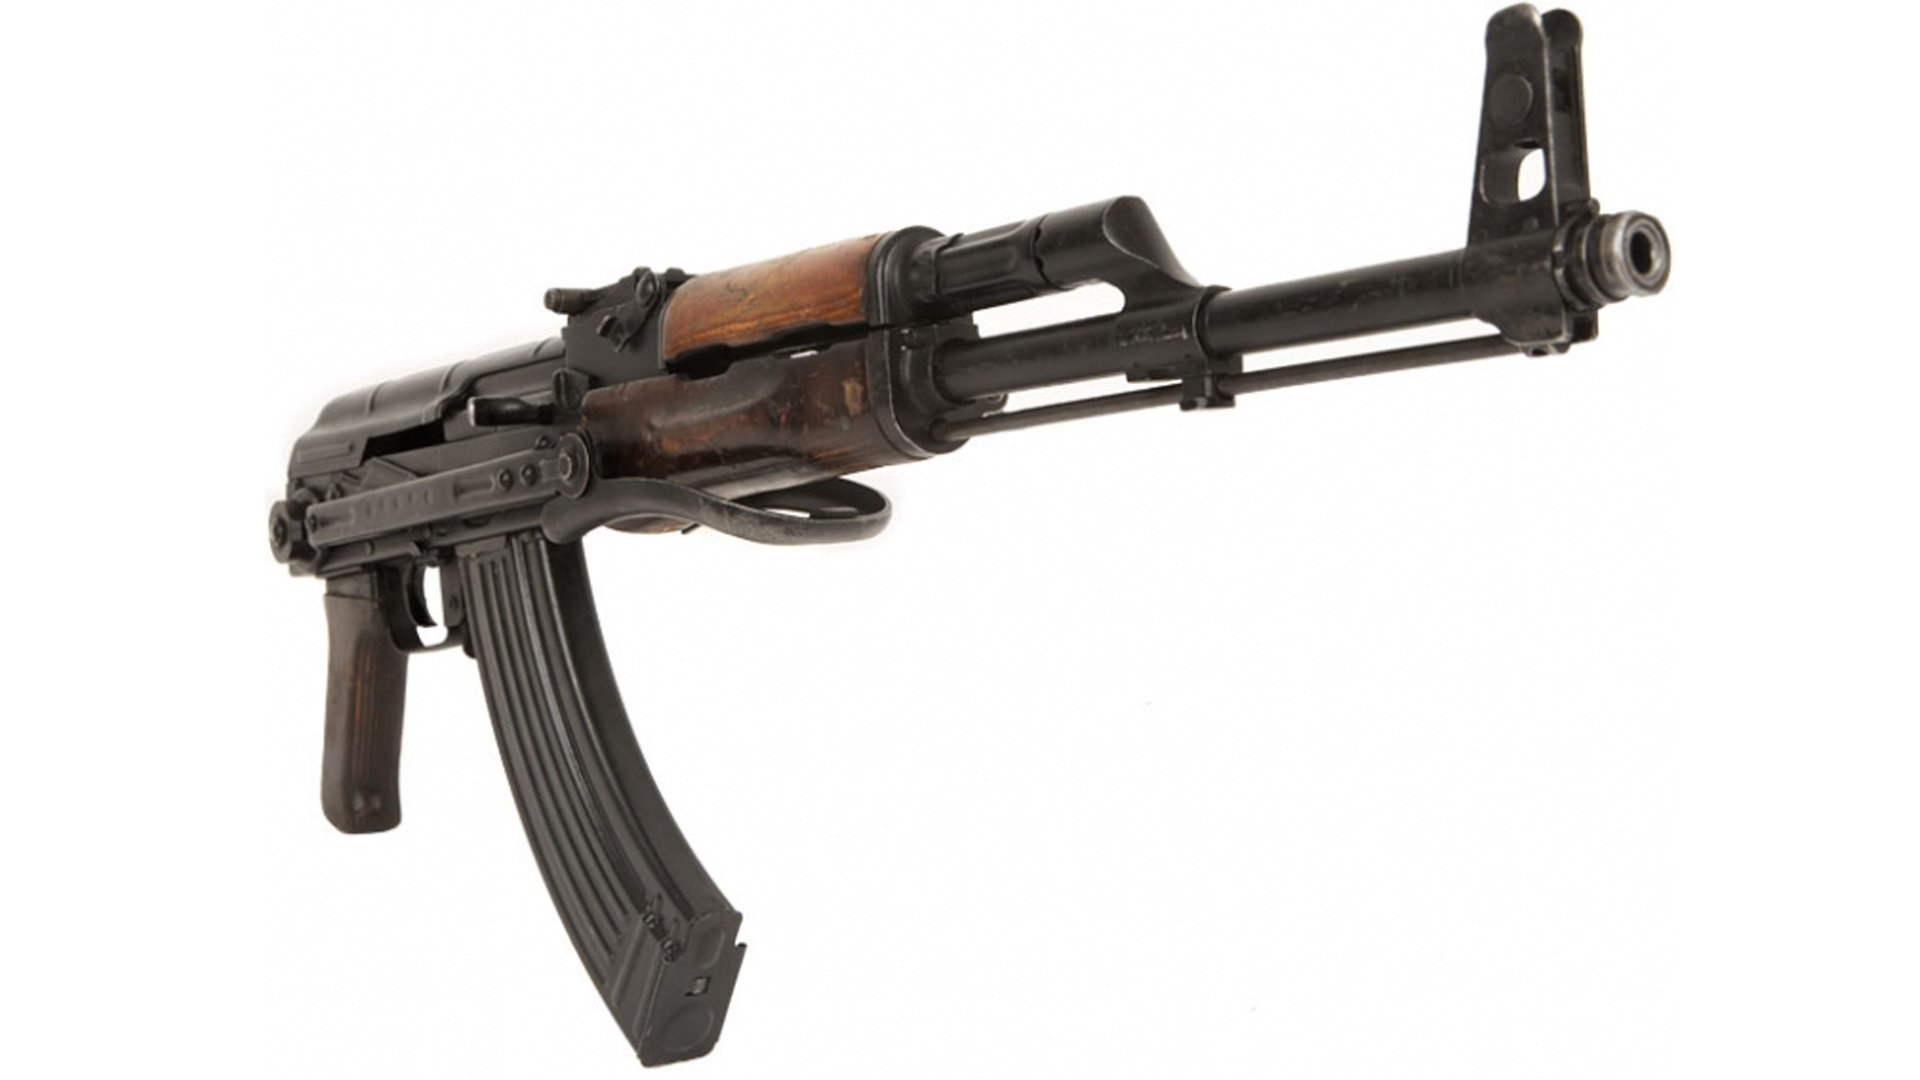 AK-47 HD Wallpaper | Background Image | 1920x1080